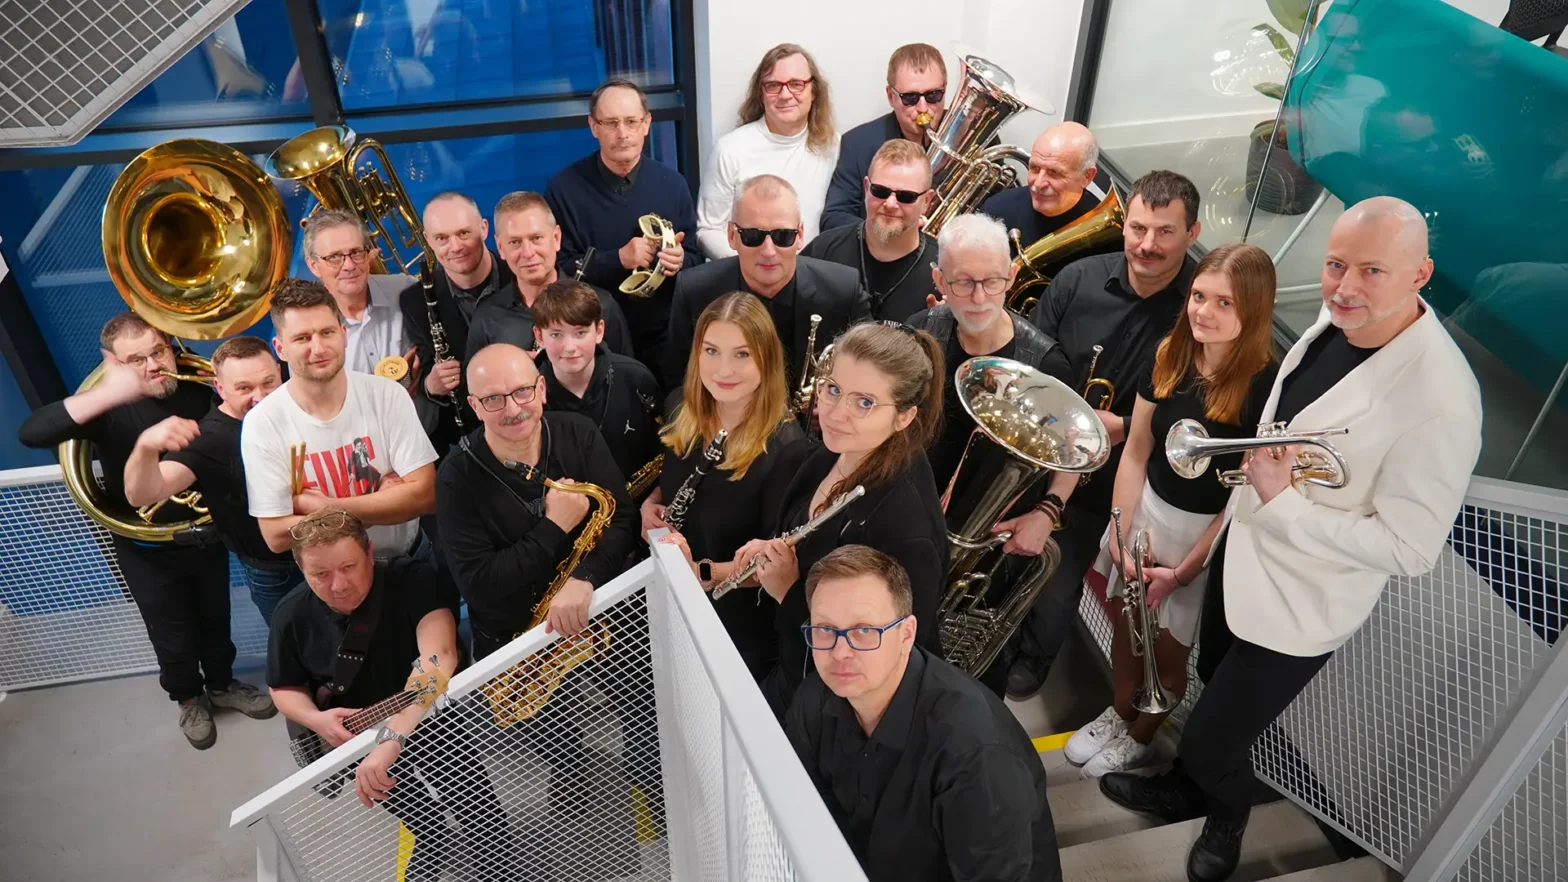 Na zdjęciu grypa osób z Orkiestry WOAKu Vabank. Wszystkie osoby trzymają w ręku instrumenty, takie jak: puzon, trąbka, flet